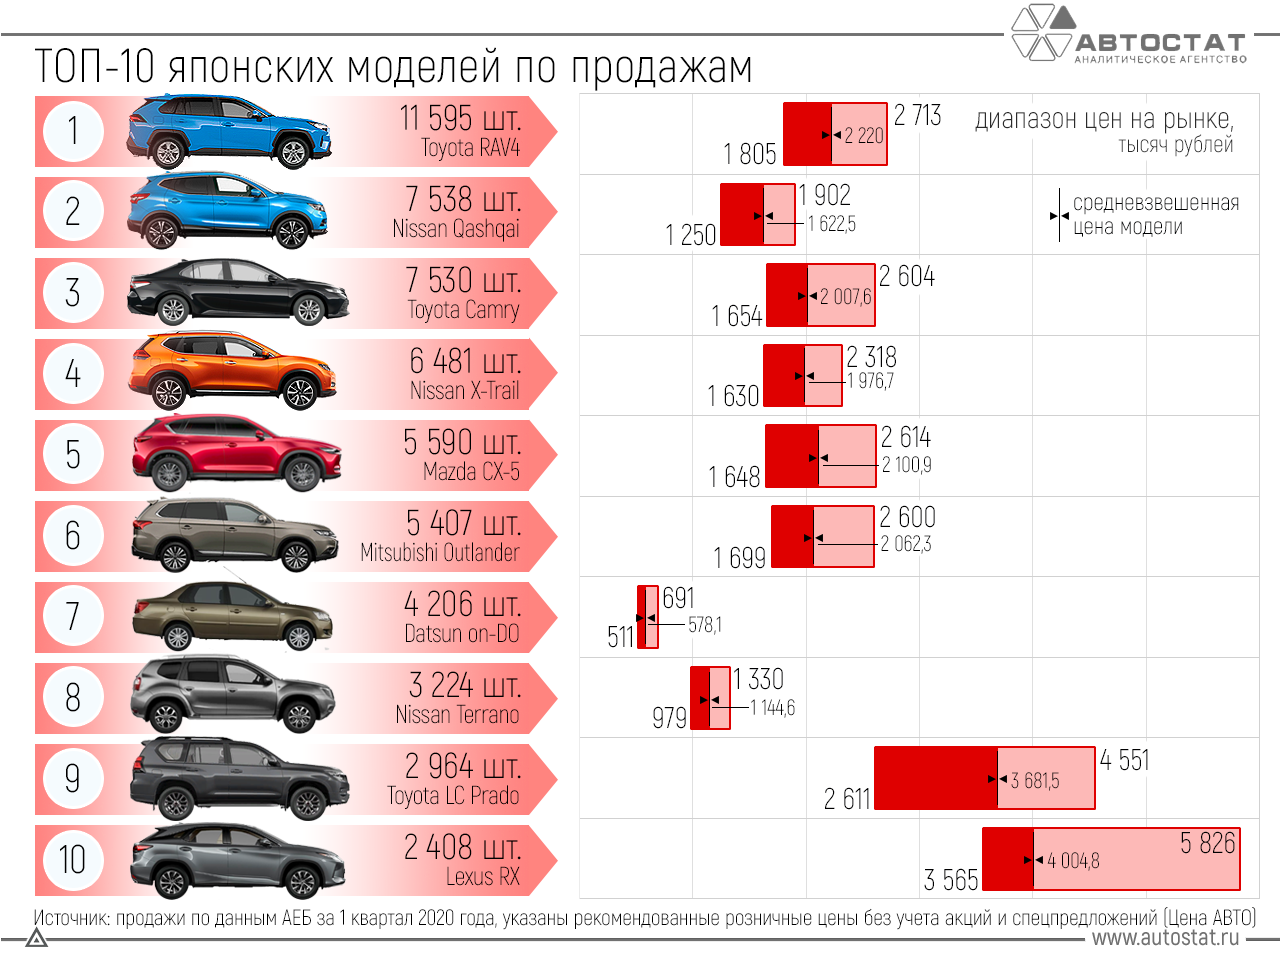 Статистика поломок: рейтинг надежности подержанных автомобилей